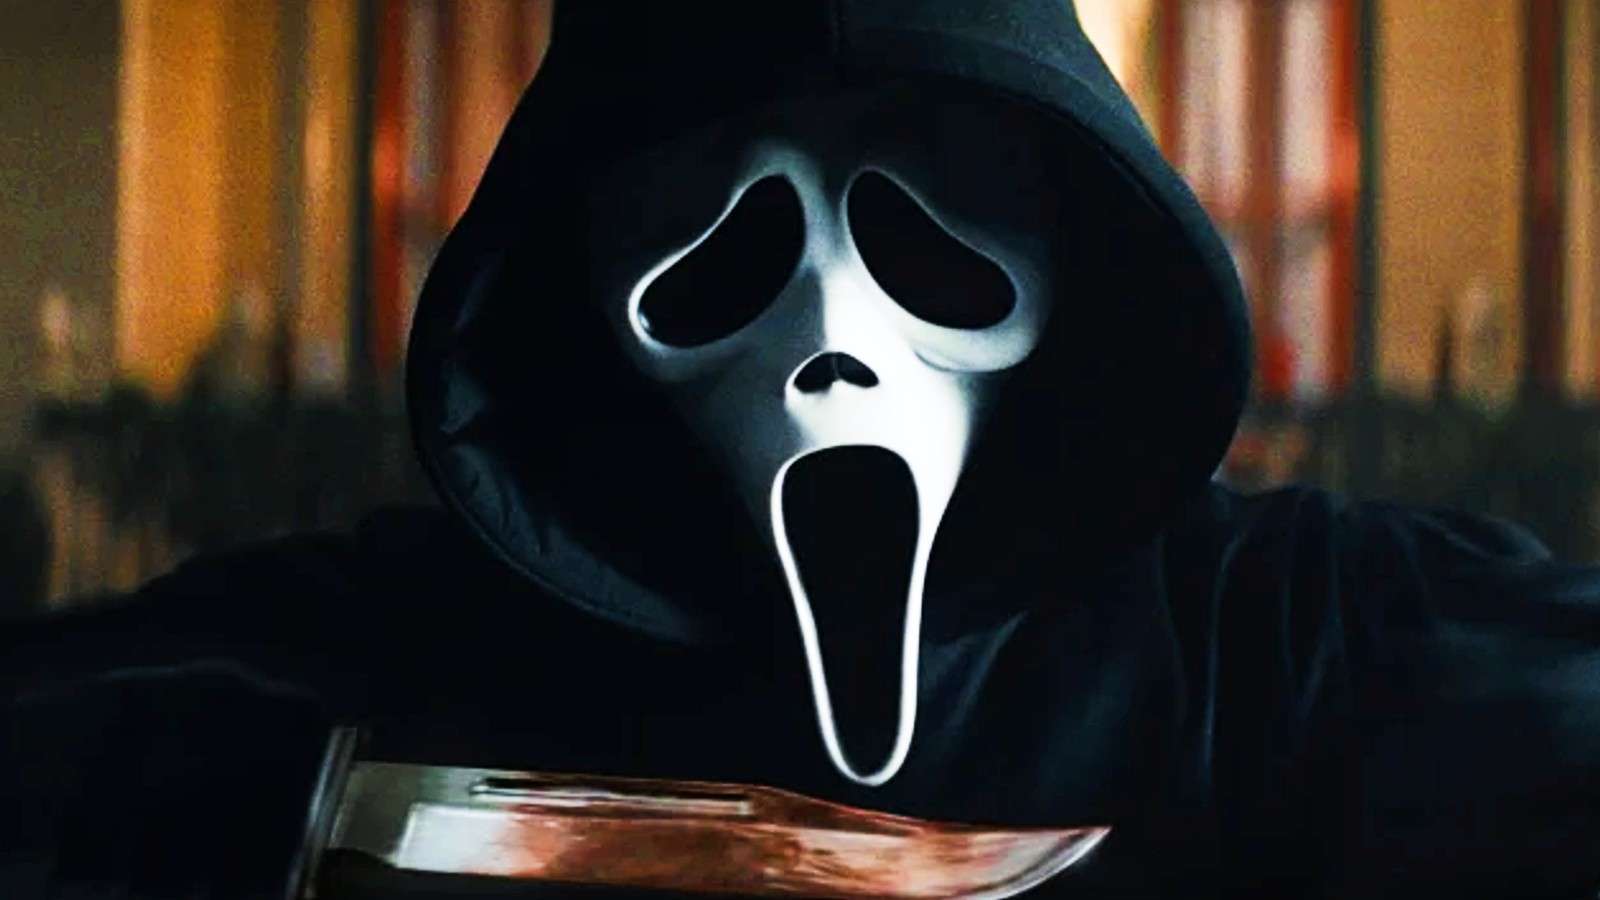 A still from Scream 5